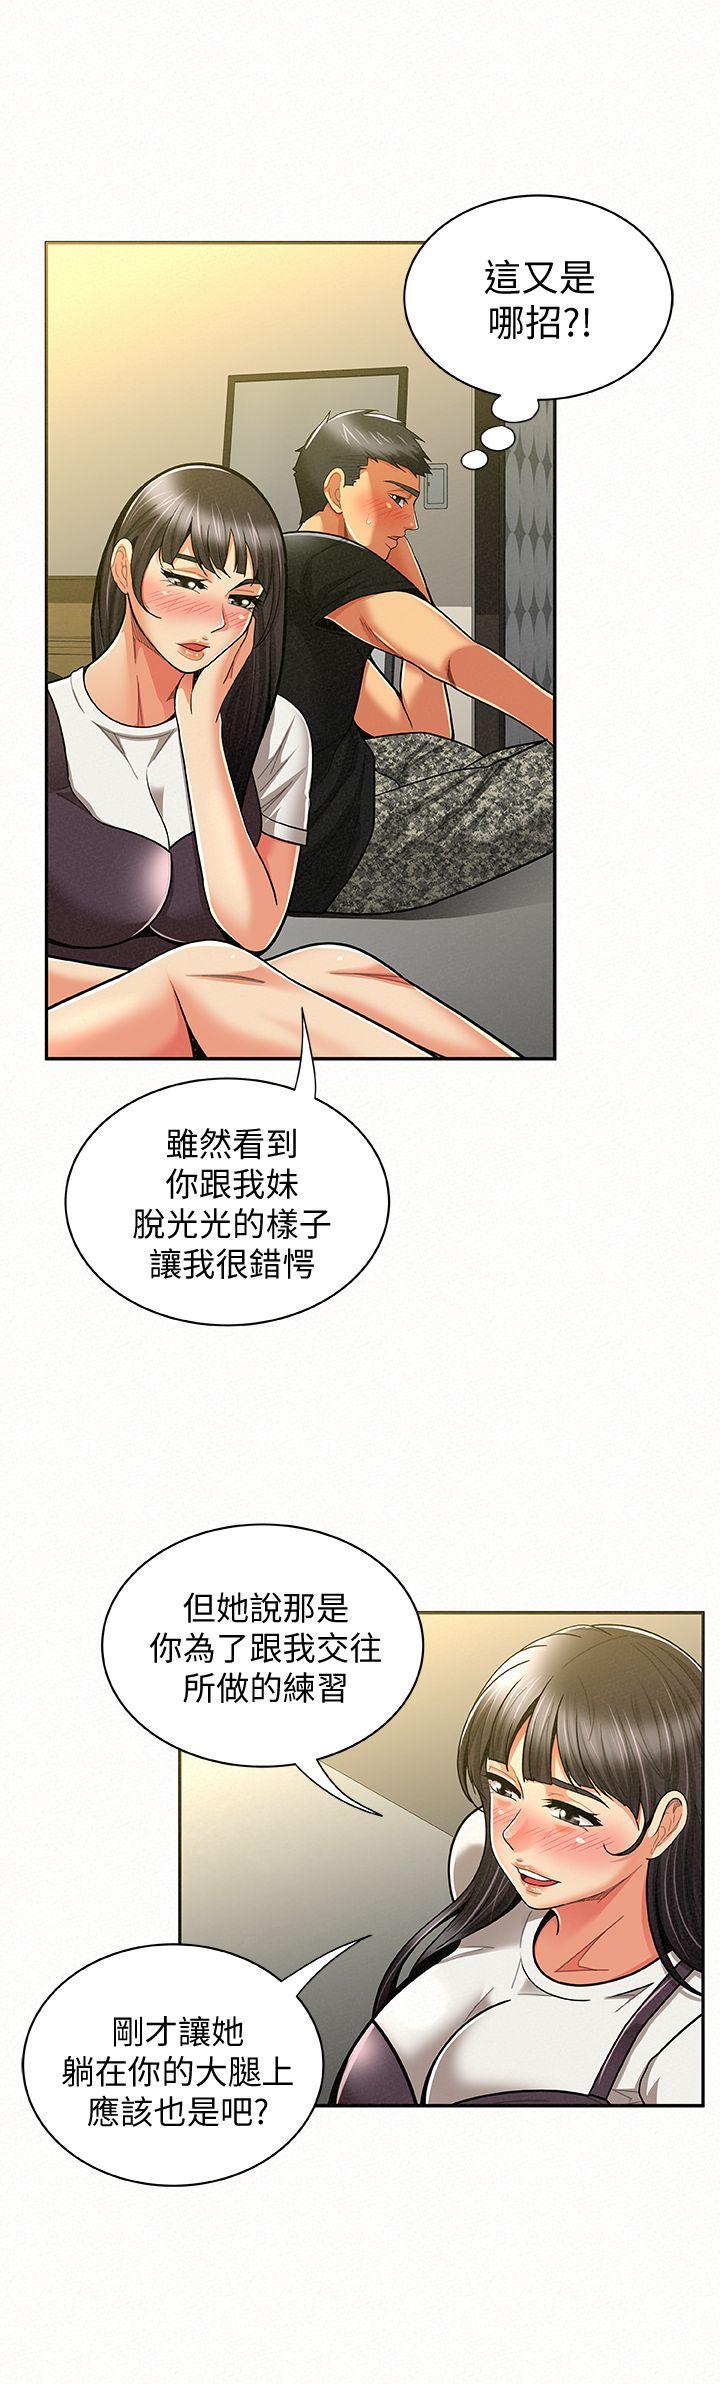 韩国污漫画 報告夫人 第11话-终于到手的诱惑机会 13